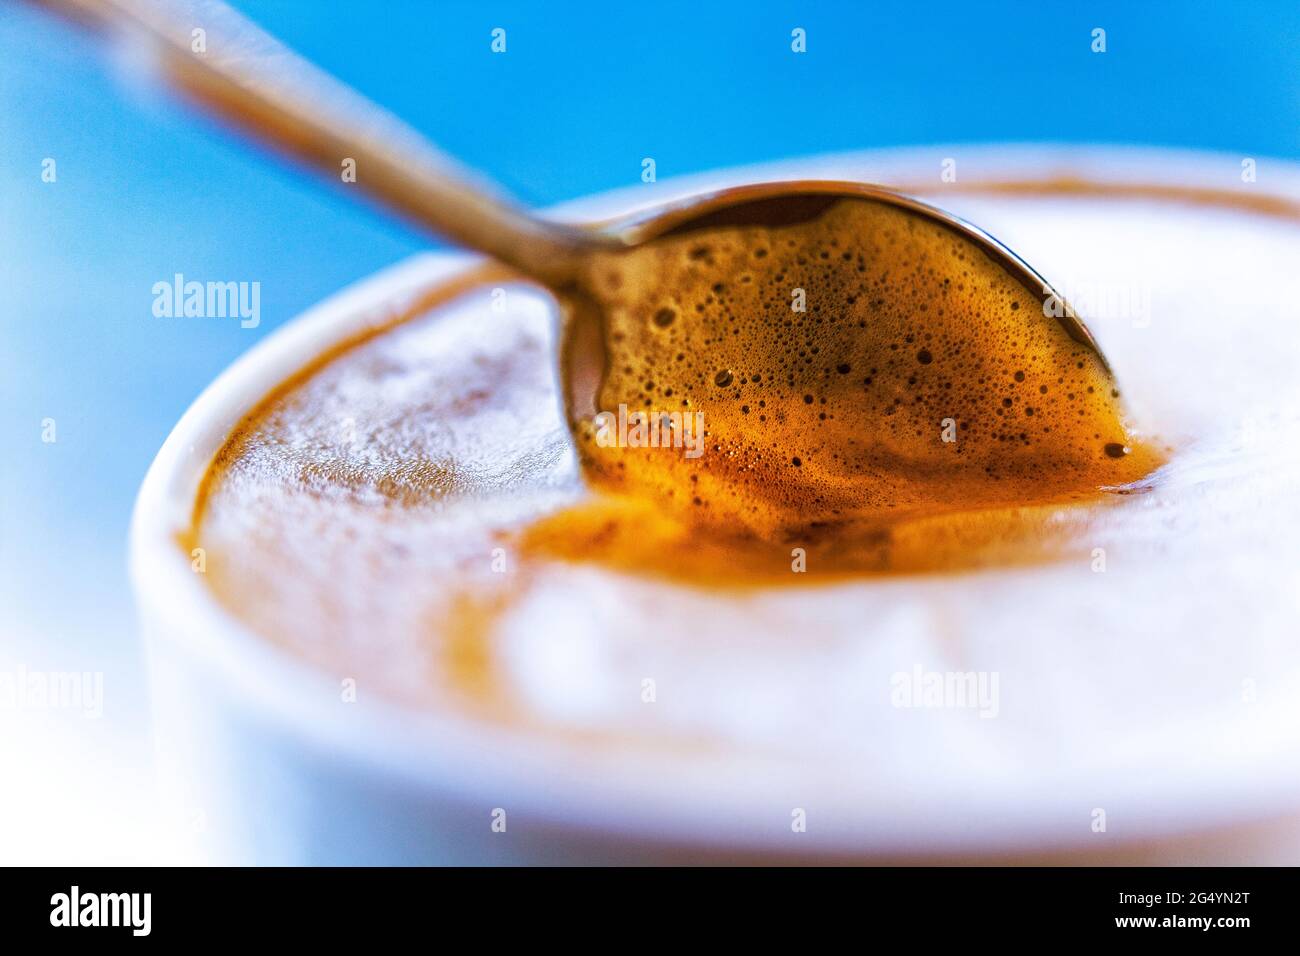 Cafe Latte (caffè e Latte) Espresso mit schaumiger Milch und Löffel in  einer Tasse, fotografiert mit einer Lensbaby Composer Linse für einen  weichen Fokus-Effekt Stockfotografie - Alamy